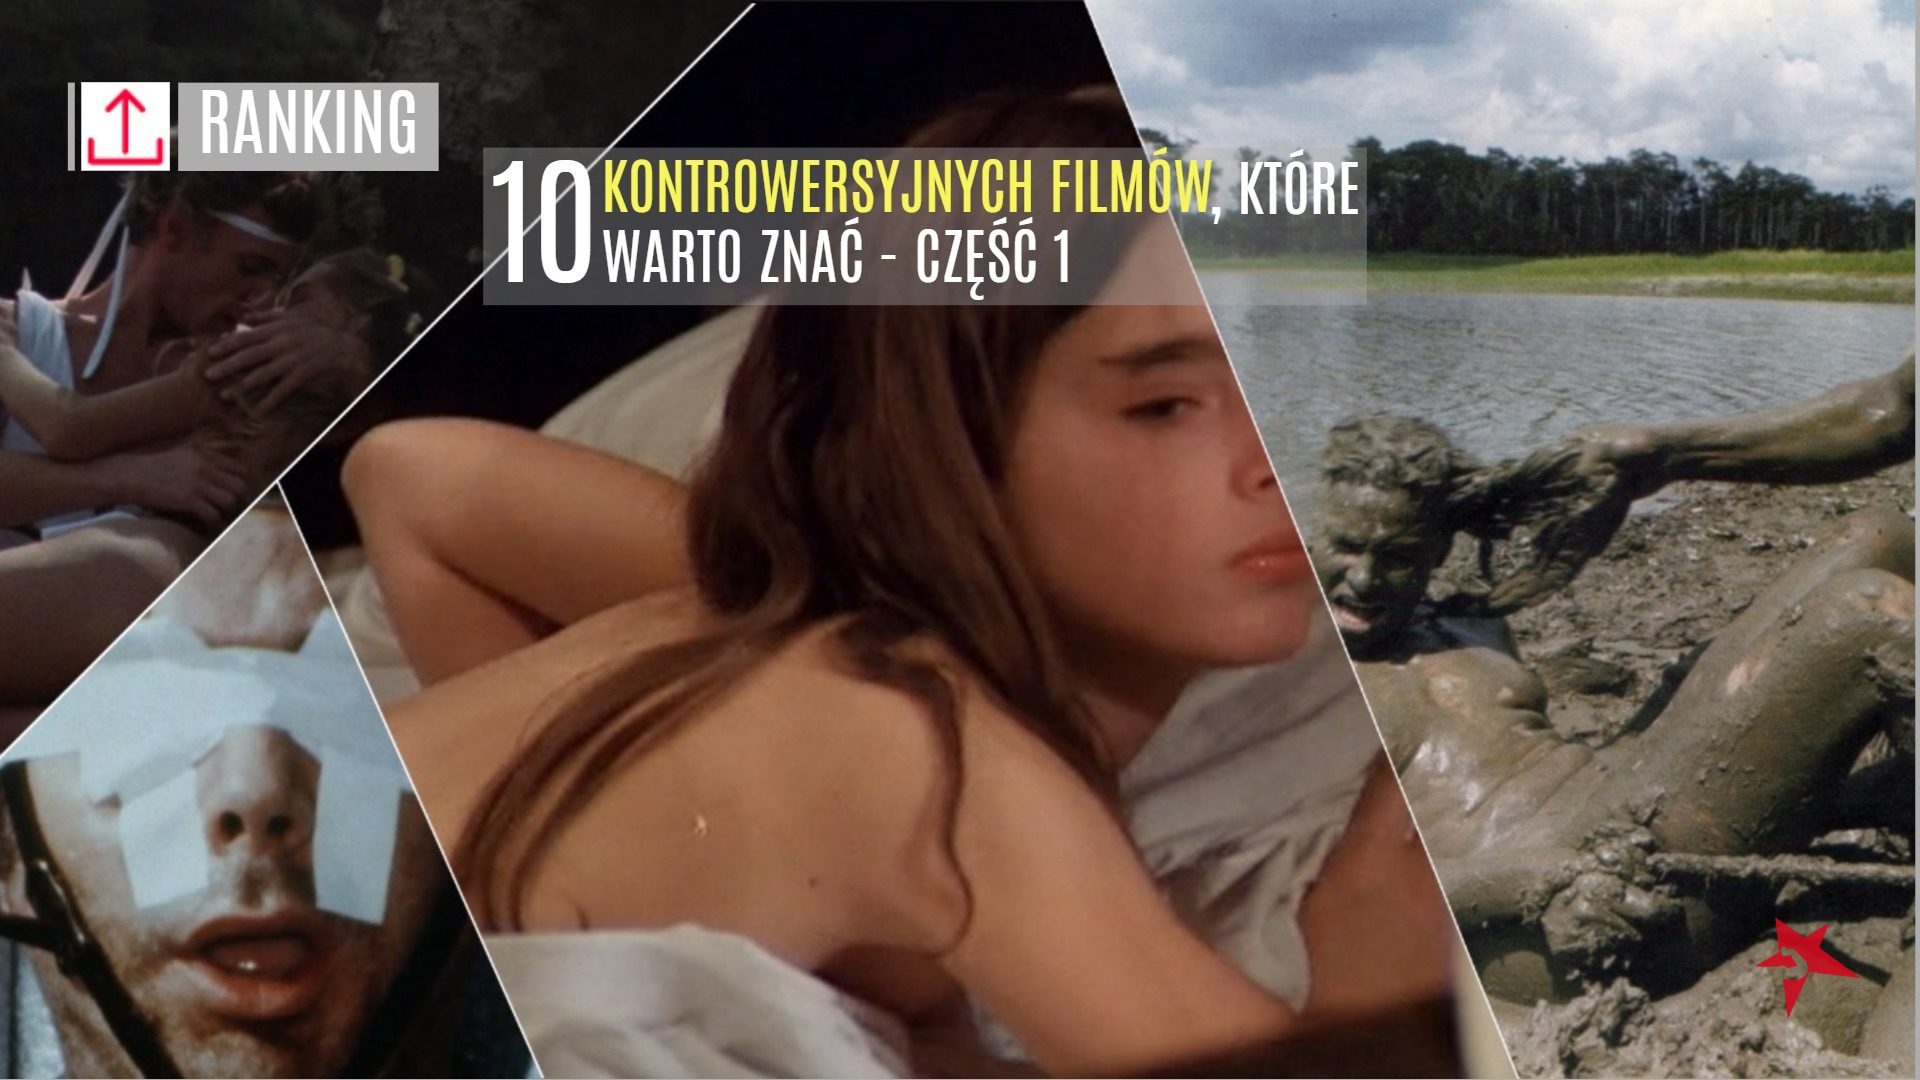 10 najbardziej kontrowersyjne filmy seks